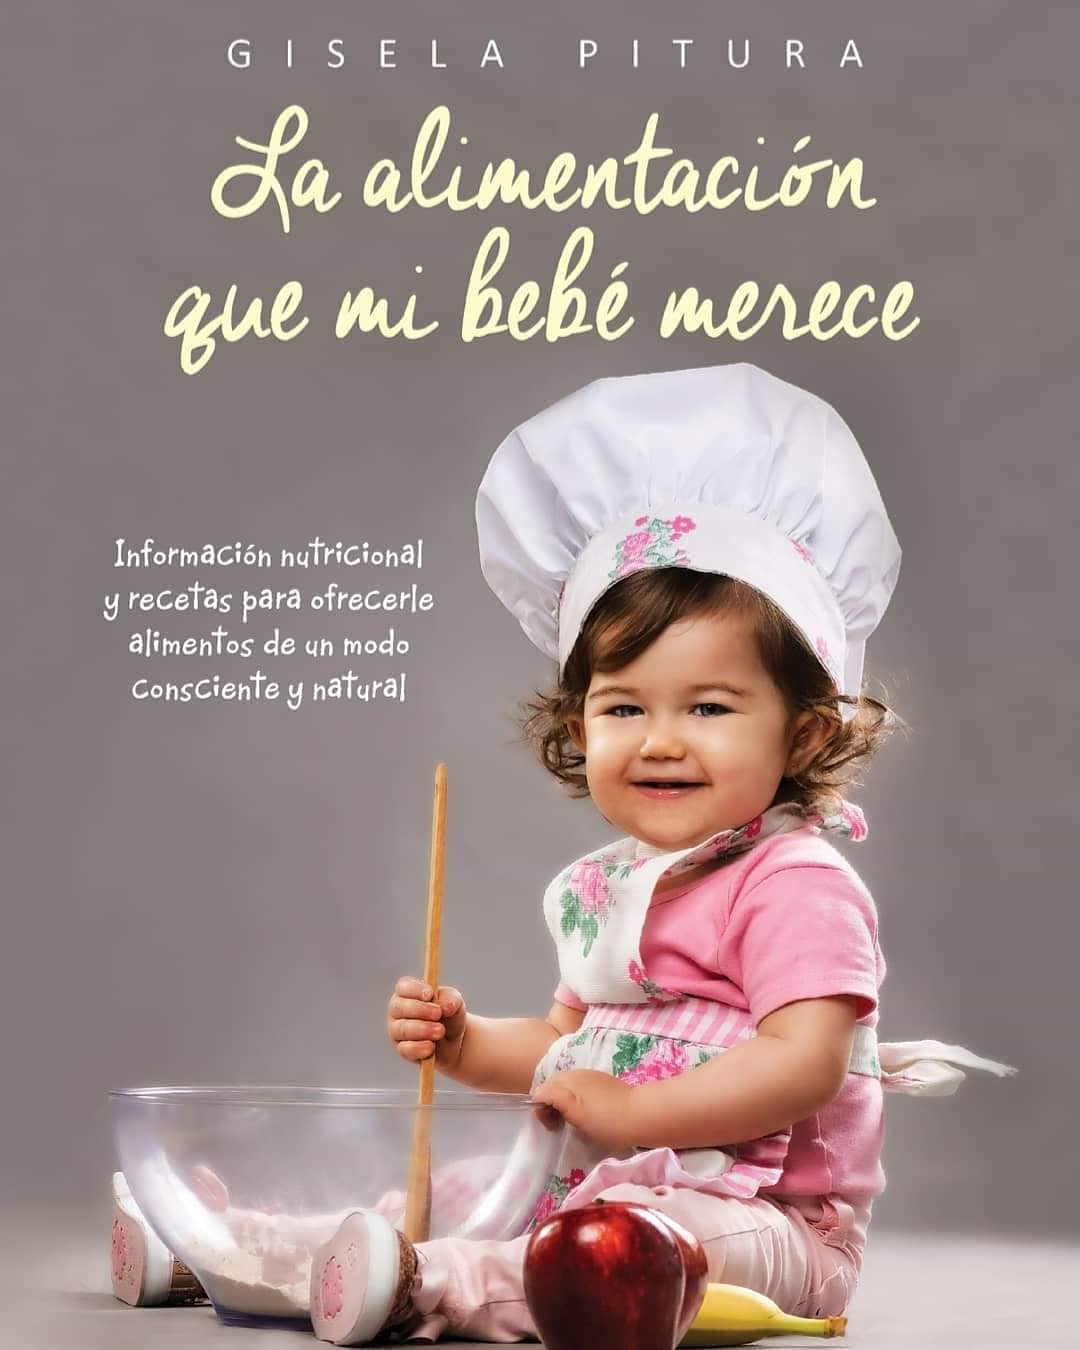 Su nuevo libro, “La alimentación que mi bebé merece”